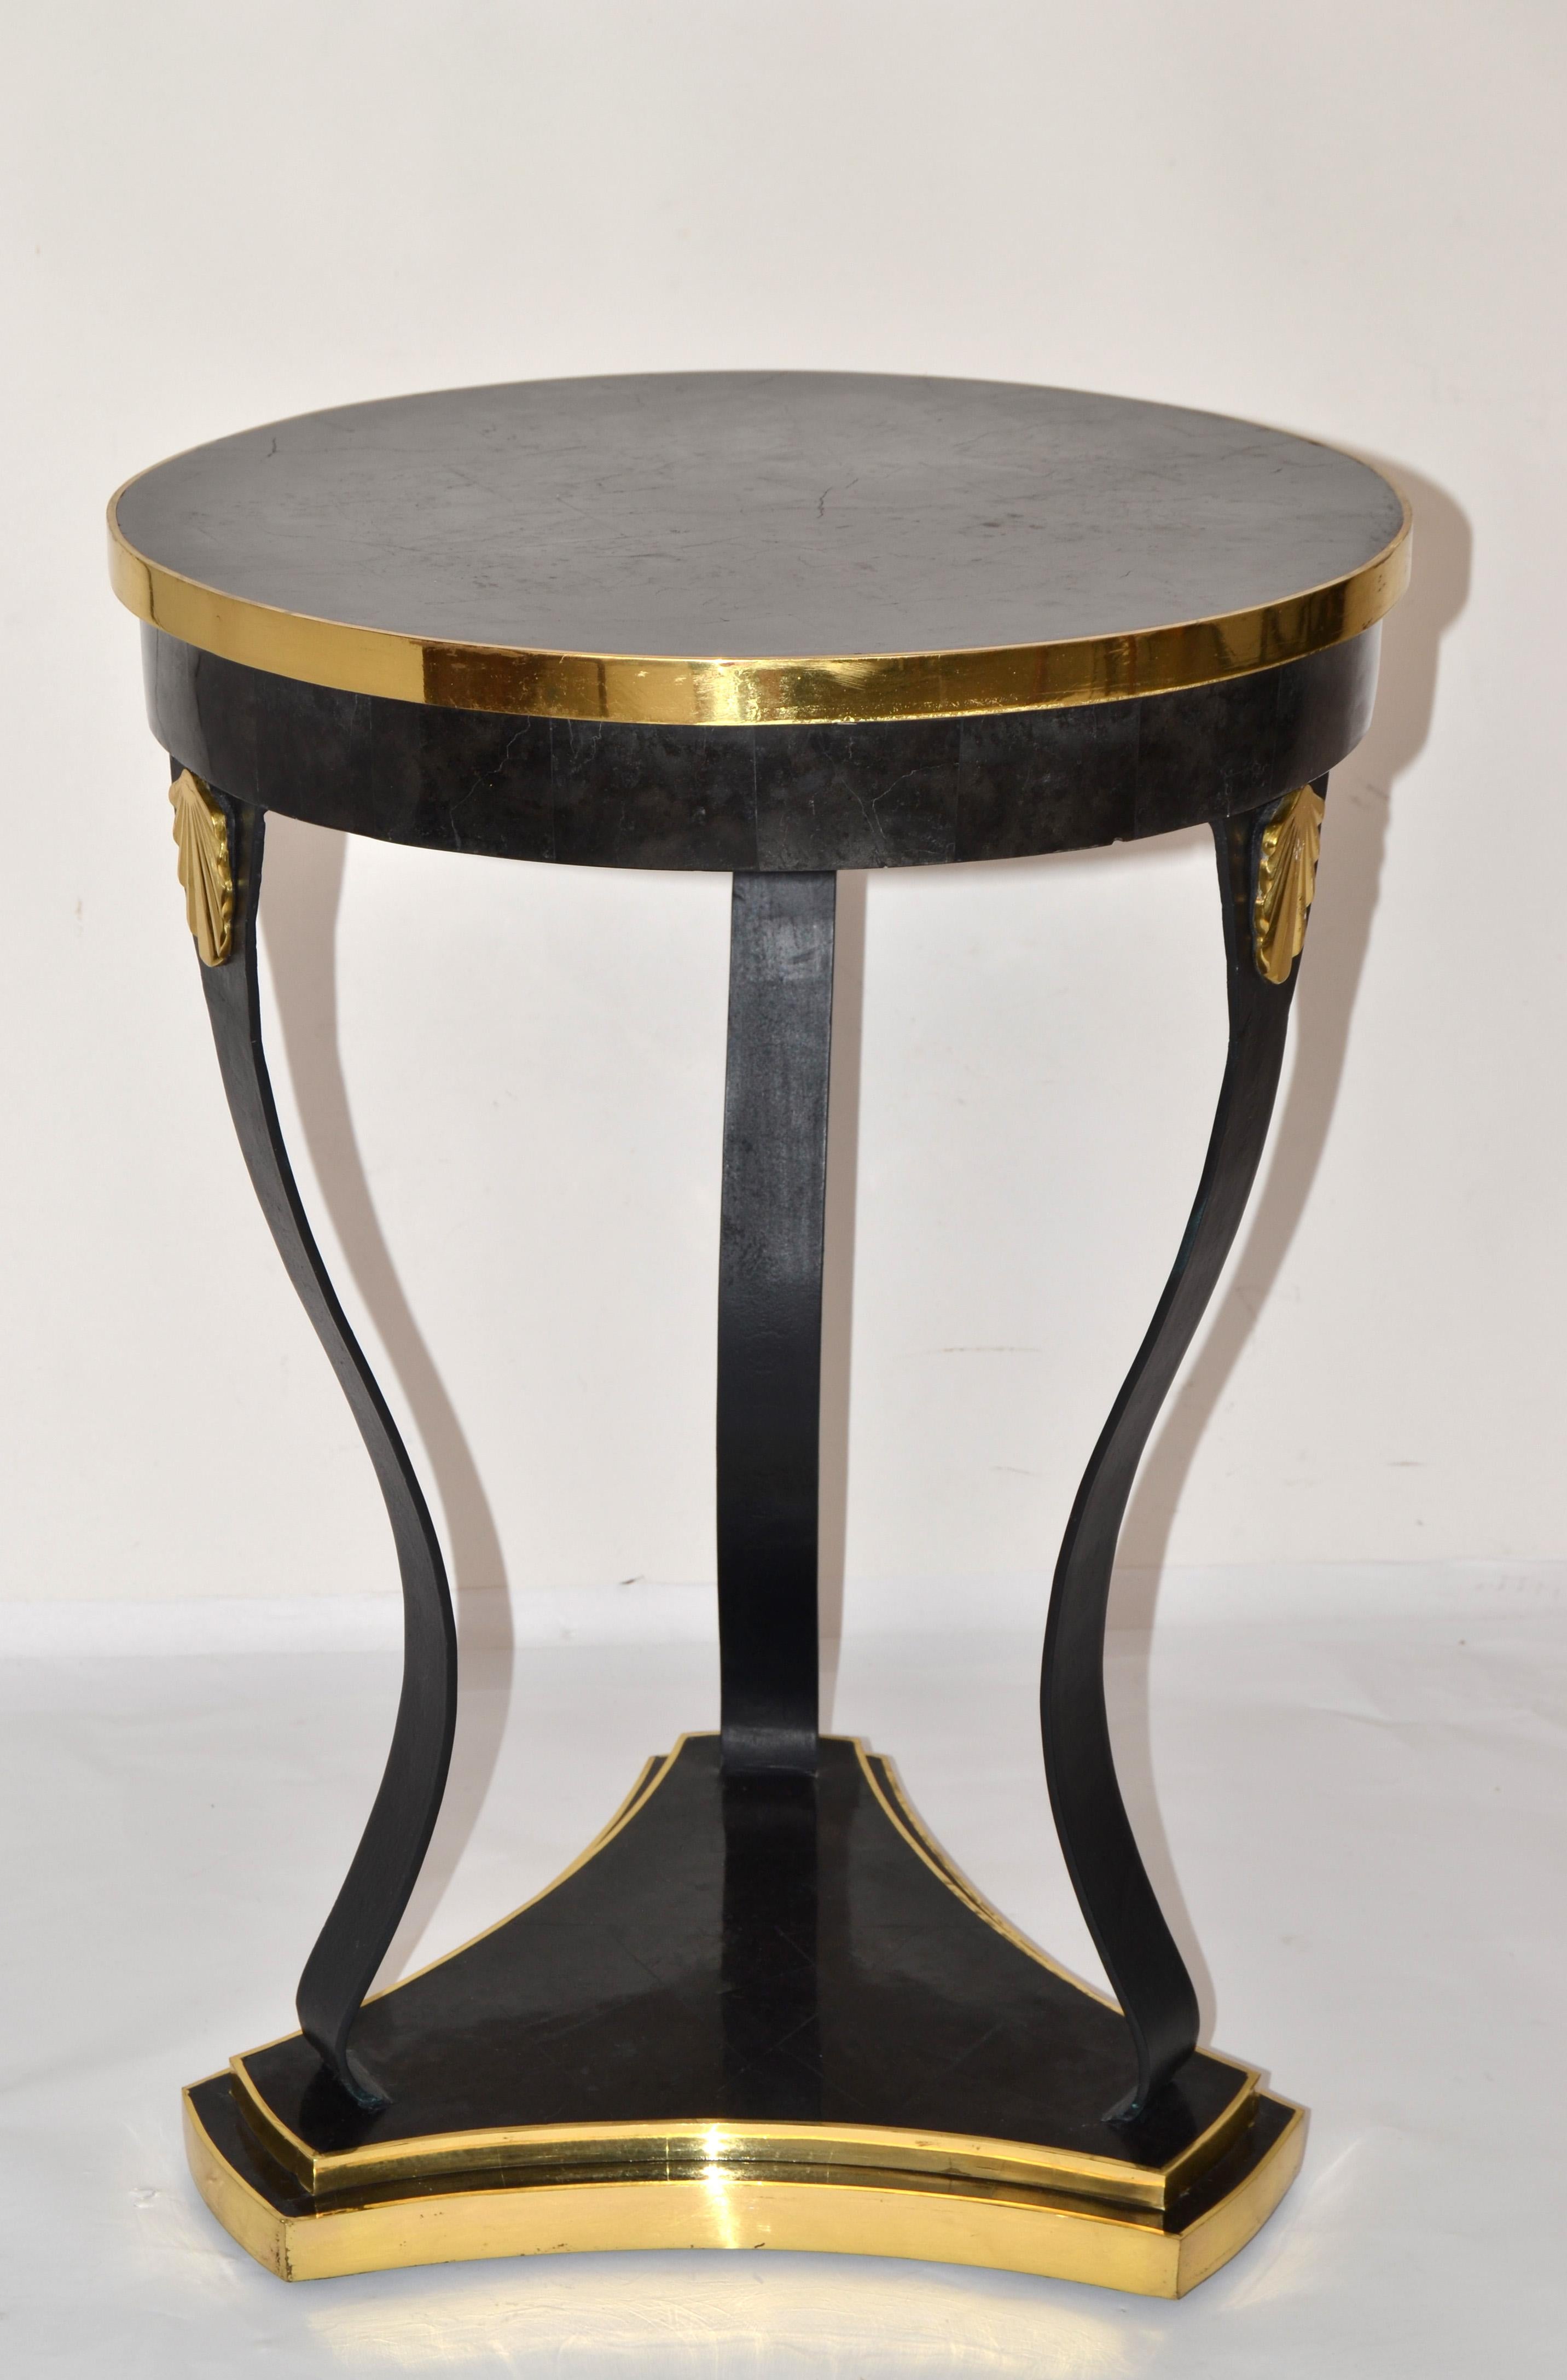 Superbe table ronde Maitland-Smith en fer forgé, bronze et pierre en marbre noir pour boire ou agrémenter un repas.
Le plateau est en pierre de marbre avec un motif de grain blanc d'une manière étonnante.
La tige du trépied est en fer forgé à la